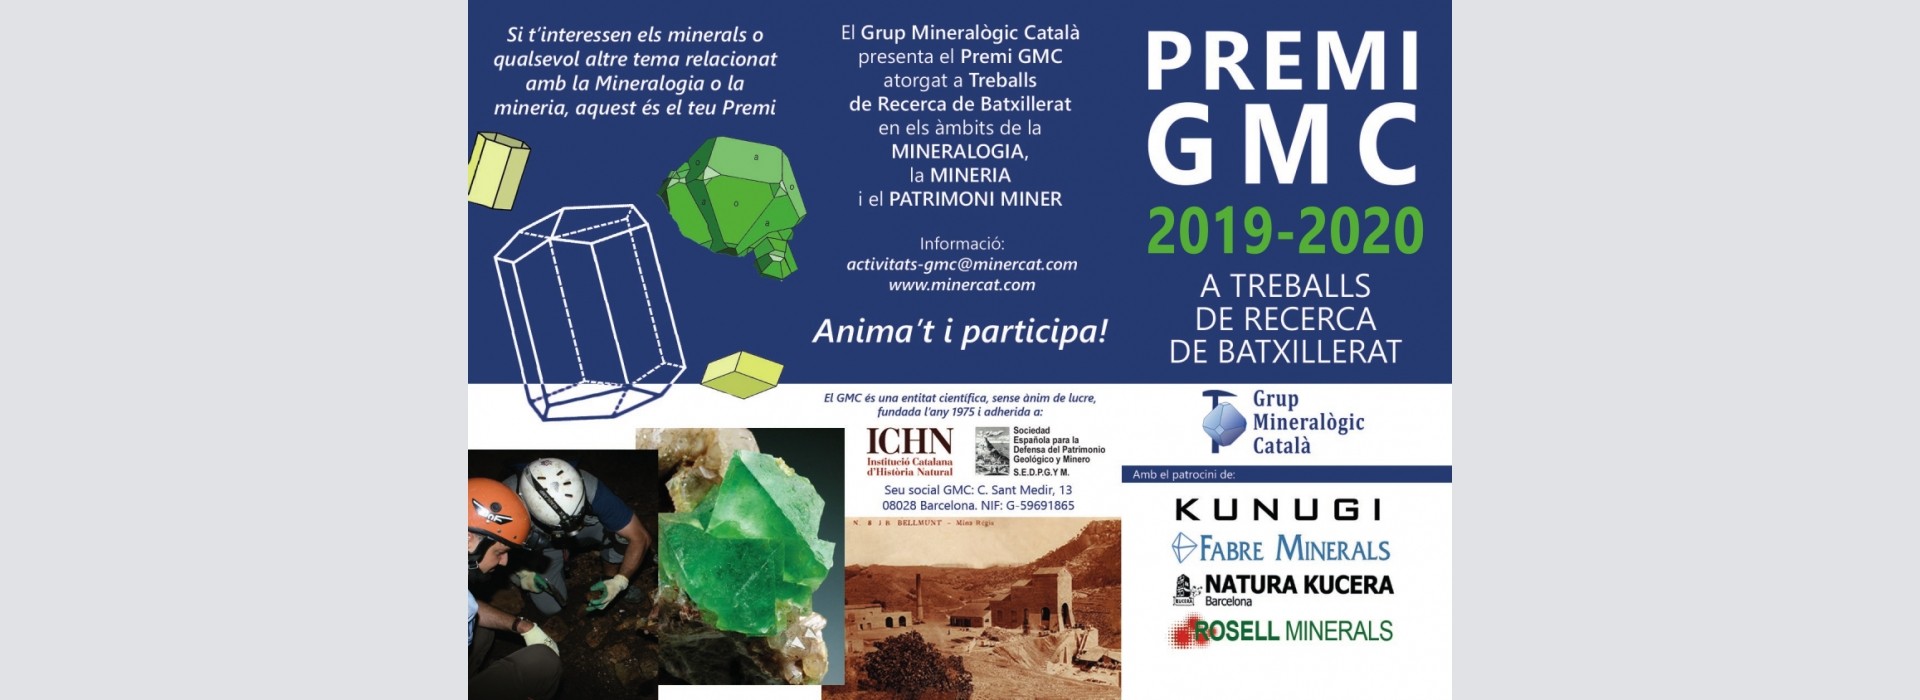 Premi GMC 2019-2020 a treballs de recerca de batxillerat